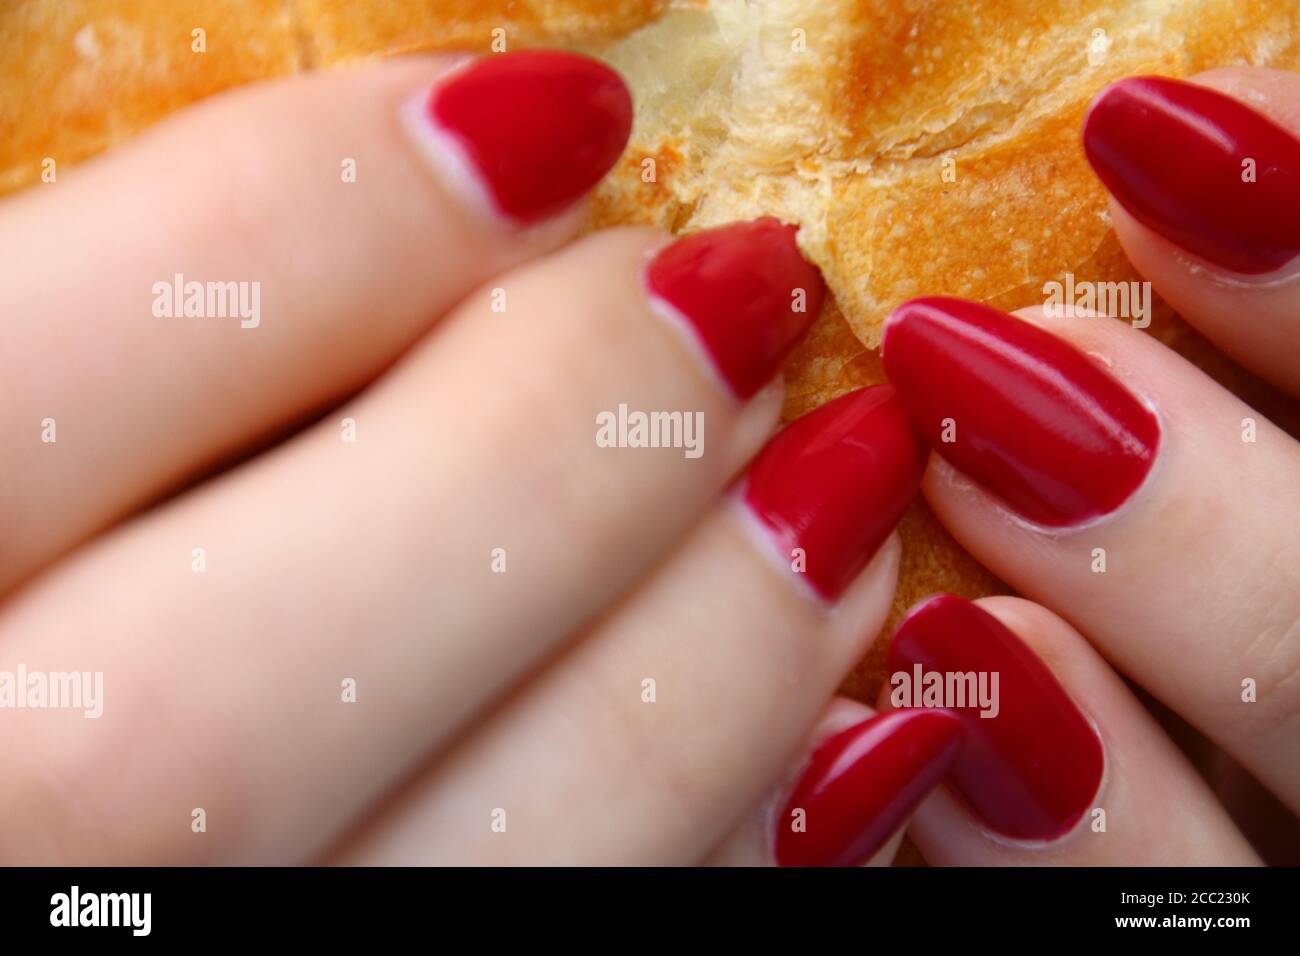 BOZEN, ITALIE - 11 juin 2020 : fille aux ongles rouges mangeant un sandwich  Photo Stock - Alamy